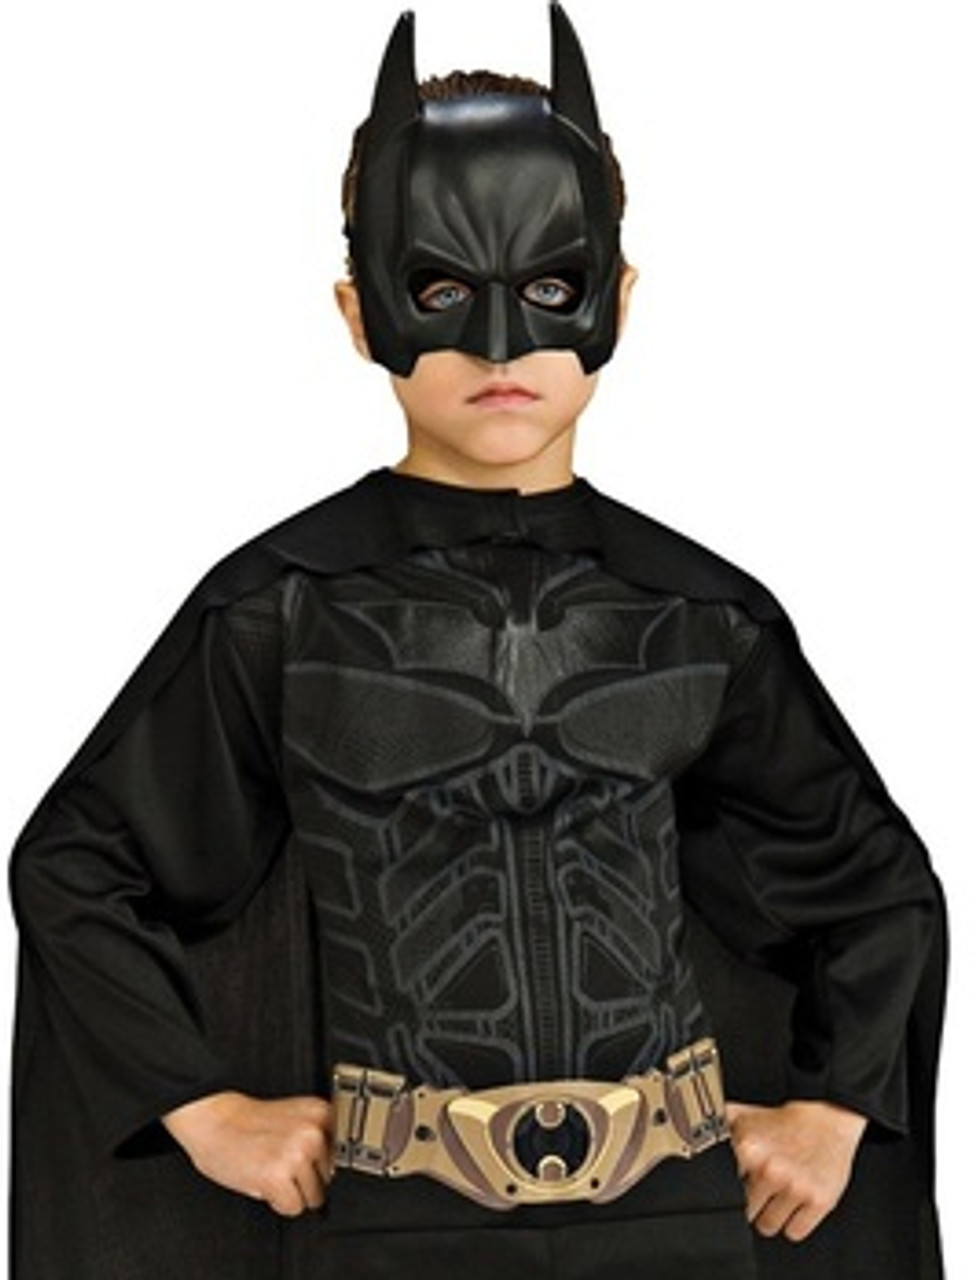 Déguisement Batman de l'aube de la justice pour enfants à partir de 9 ans -   